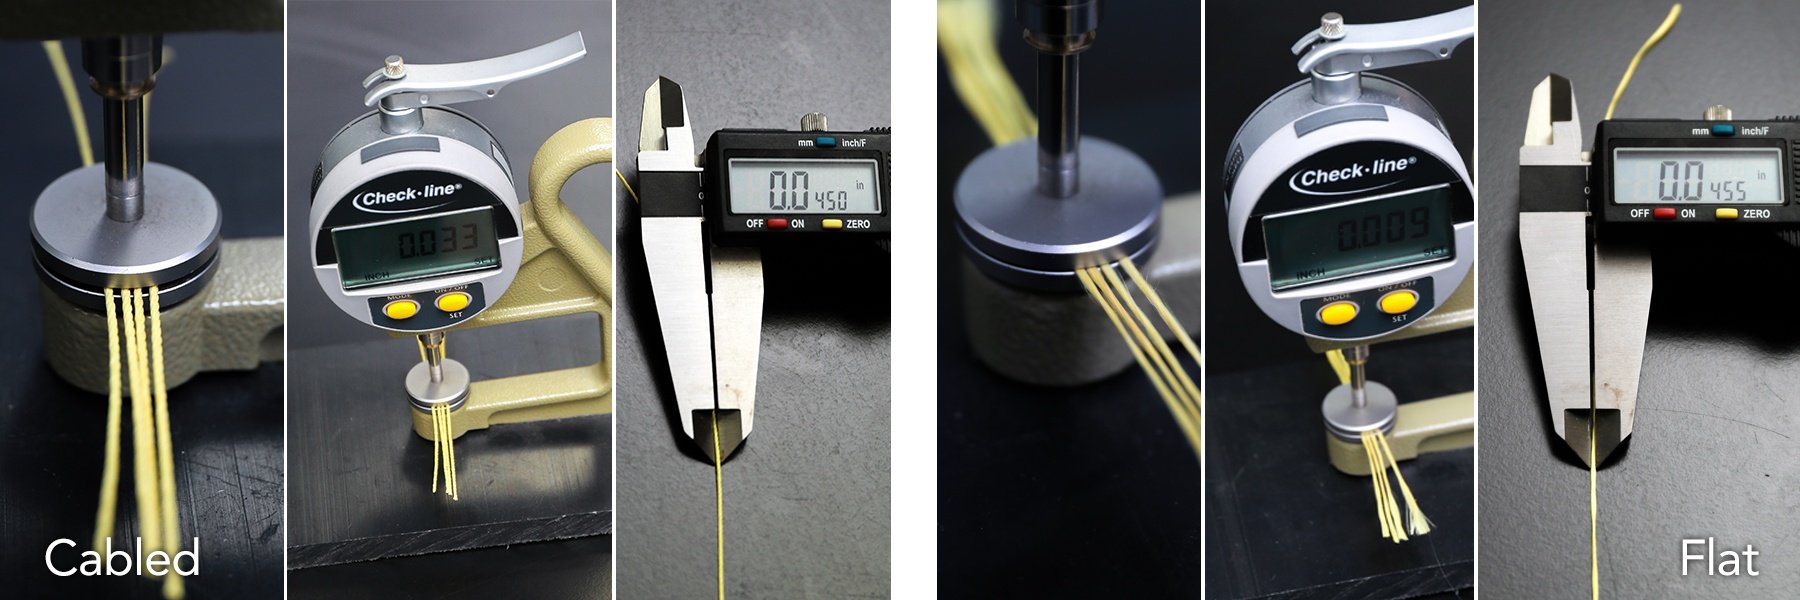 Cabled Thread vs Flat Thread Measurements